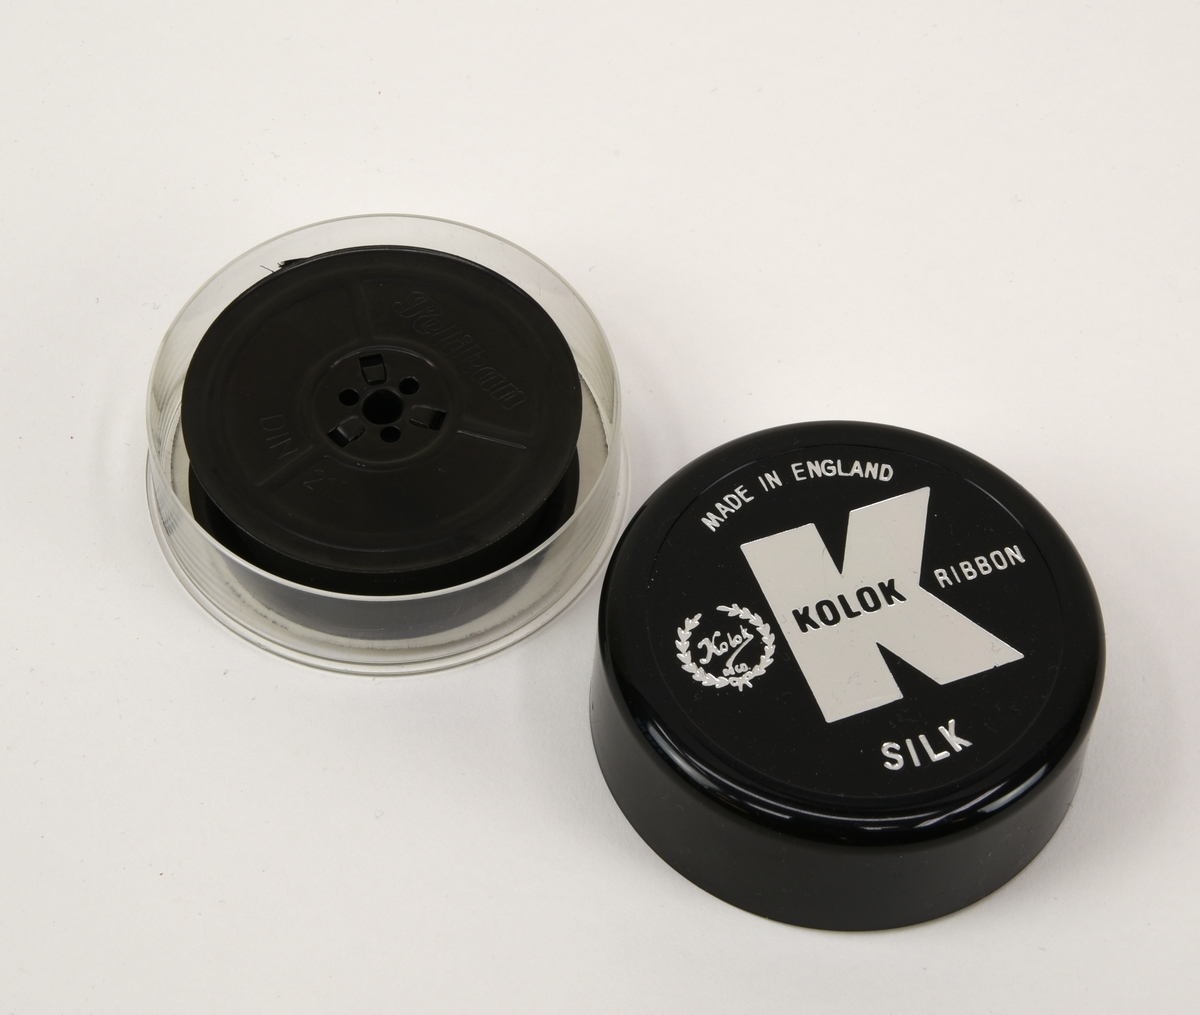 Två svarta 13 mm färgband till skrivmaskin på spolar av DIN 2103-standard. Båda band ligger i varsin plastask med lock.

Det ena färgbandet (:18) är använt och upprullat på en spole från Pelikan men ligger i en rund ask från Kolok (:19-20). Asken har en genomskinlig underdel och ett svart lock. På locket finns Koloks logotyp, "Made in england" och "Silk" tryckt i silver. I botten av asken finns ett guldfärgat papper med information om vilka skrivmaskinstyper bandet passar till.

Det andra bandet (:21) är oanvänt men saknar helt information om tillverkare och dylikt. Det enda som finns är "DIN 2103" instansat på spolen och ett eventuellt artikelnummer på askens undersida. Spolen är förpackad i folie och asken (:22-23) är av samma typ som (:19) men locket är rött och saknar text.